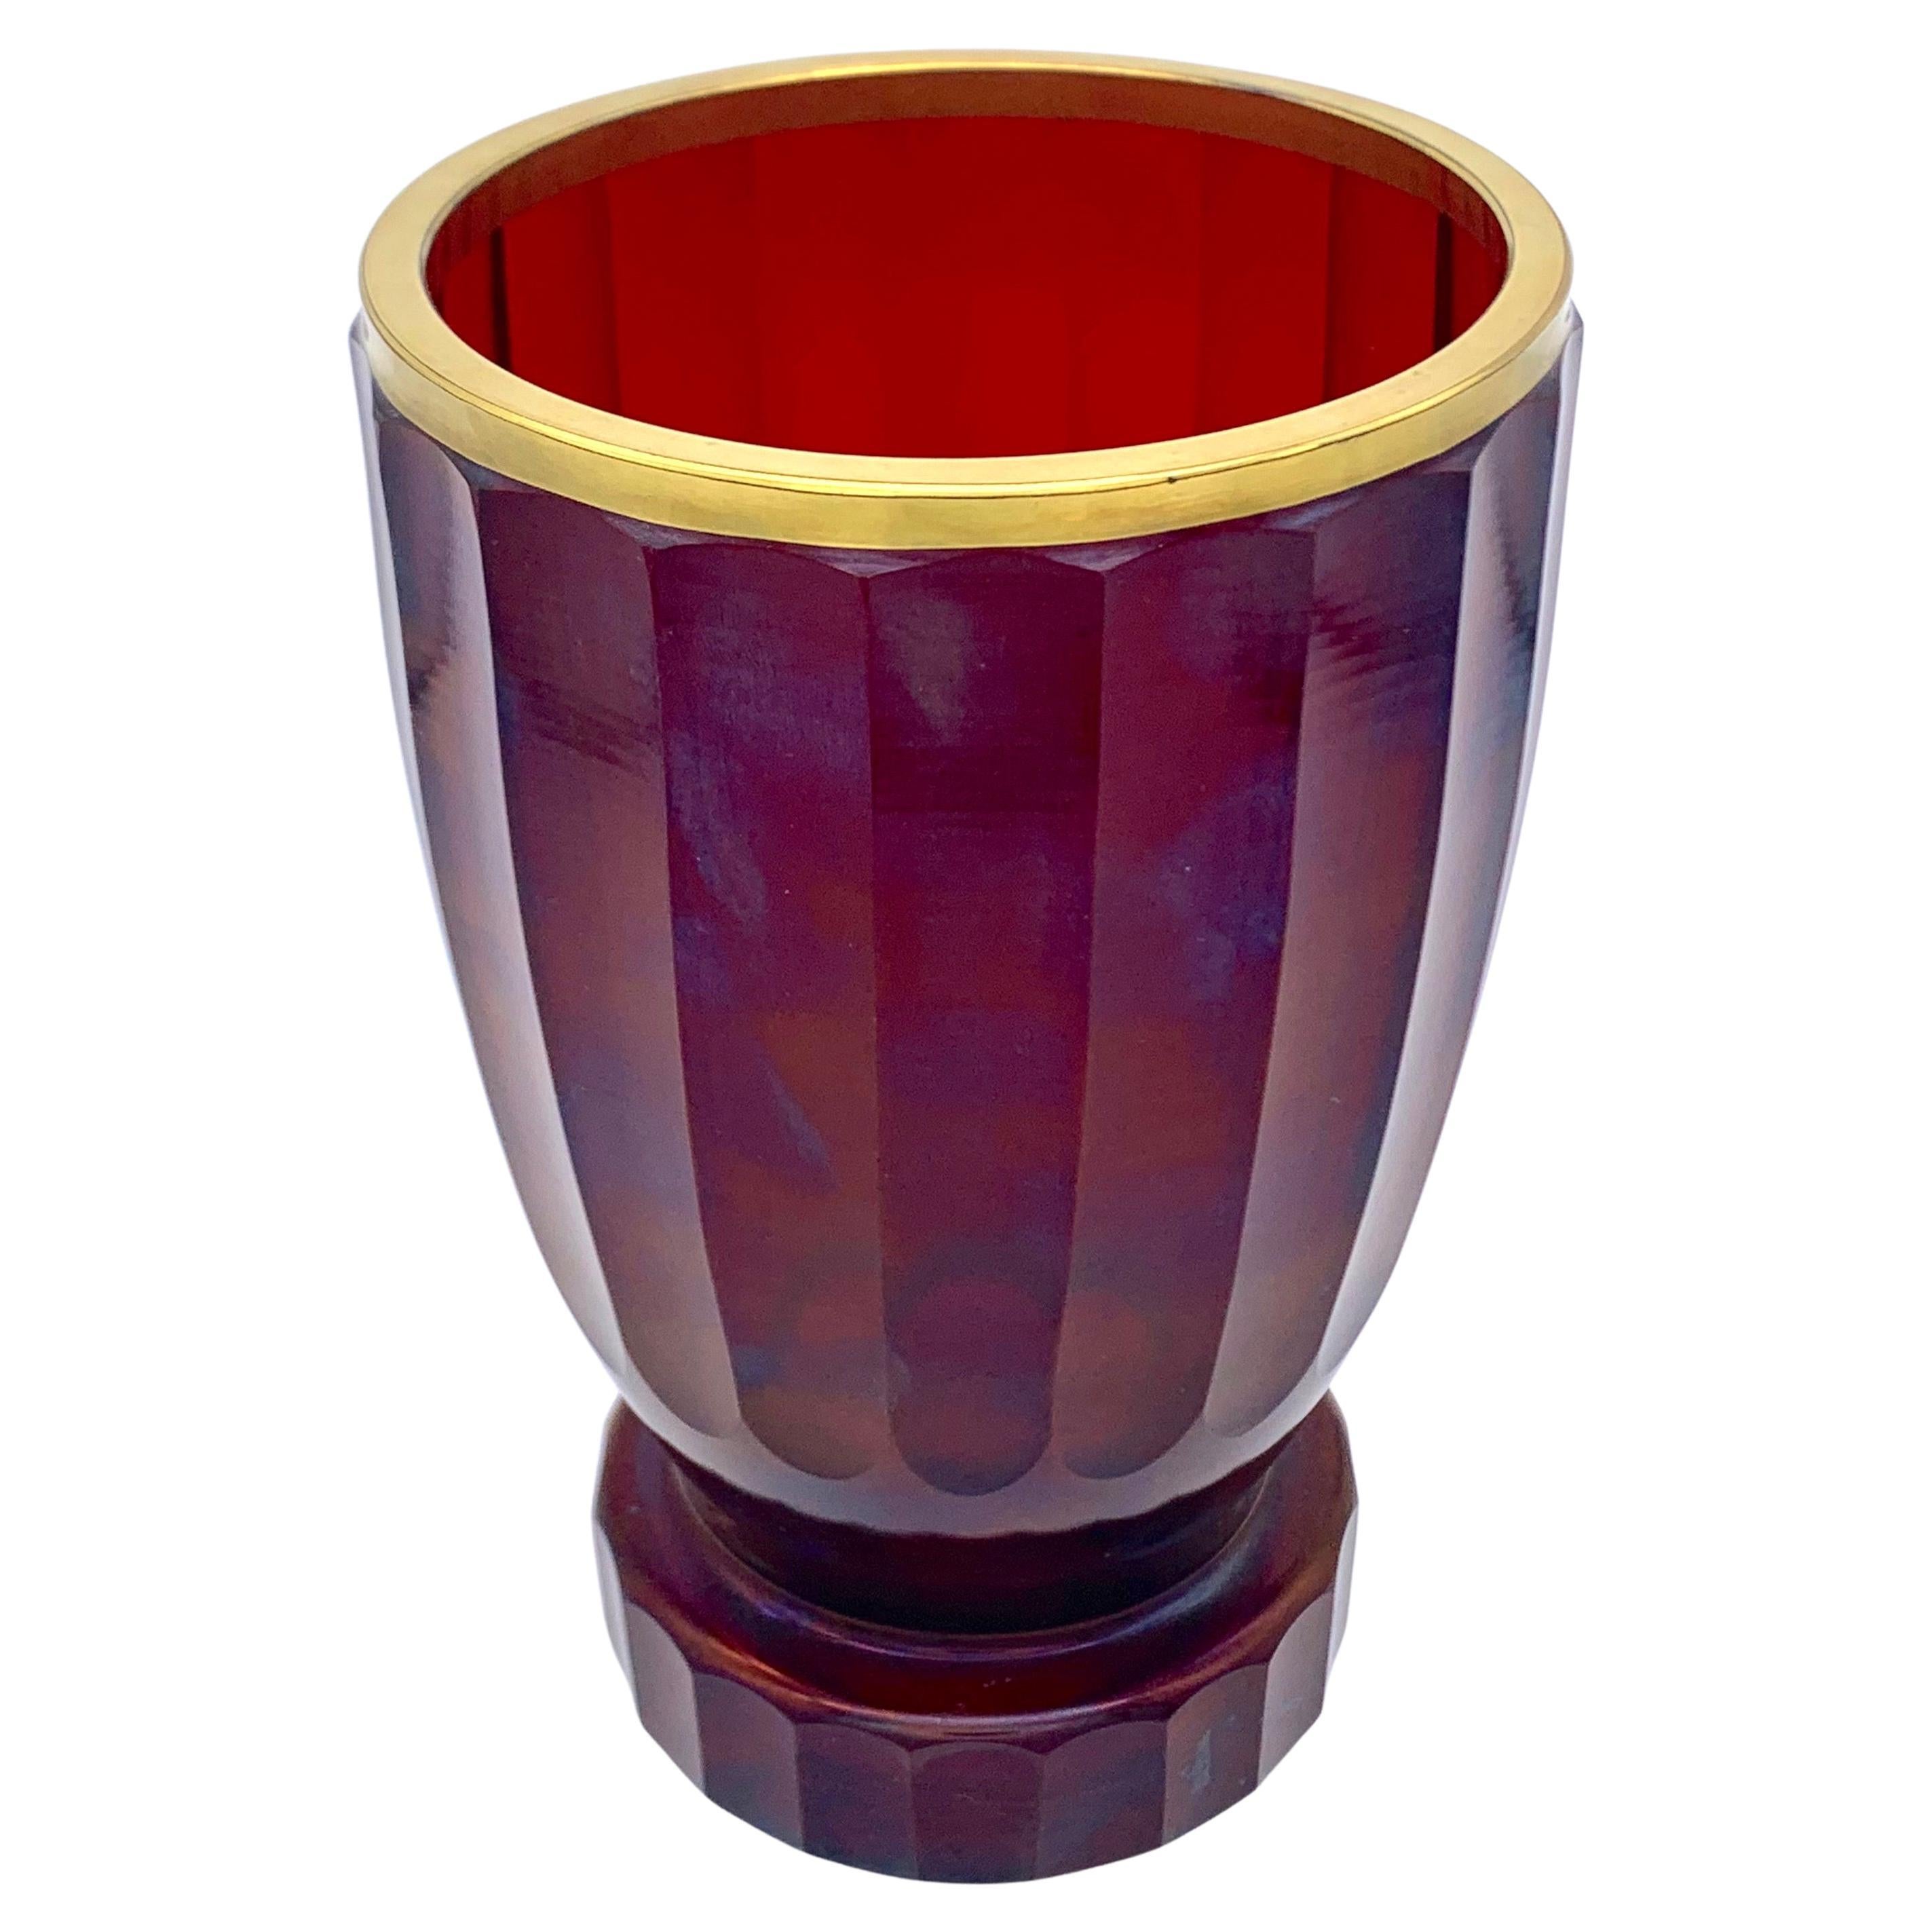 Ce verre rubis facetté est de proportions élégantes et fines.